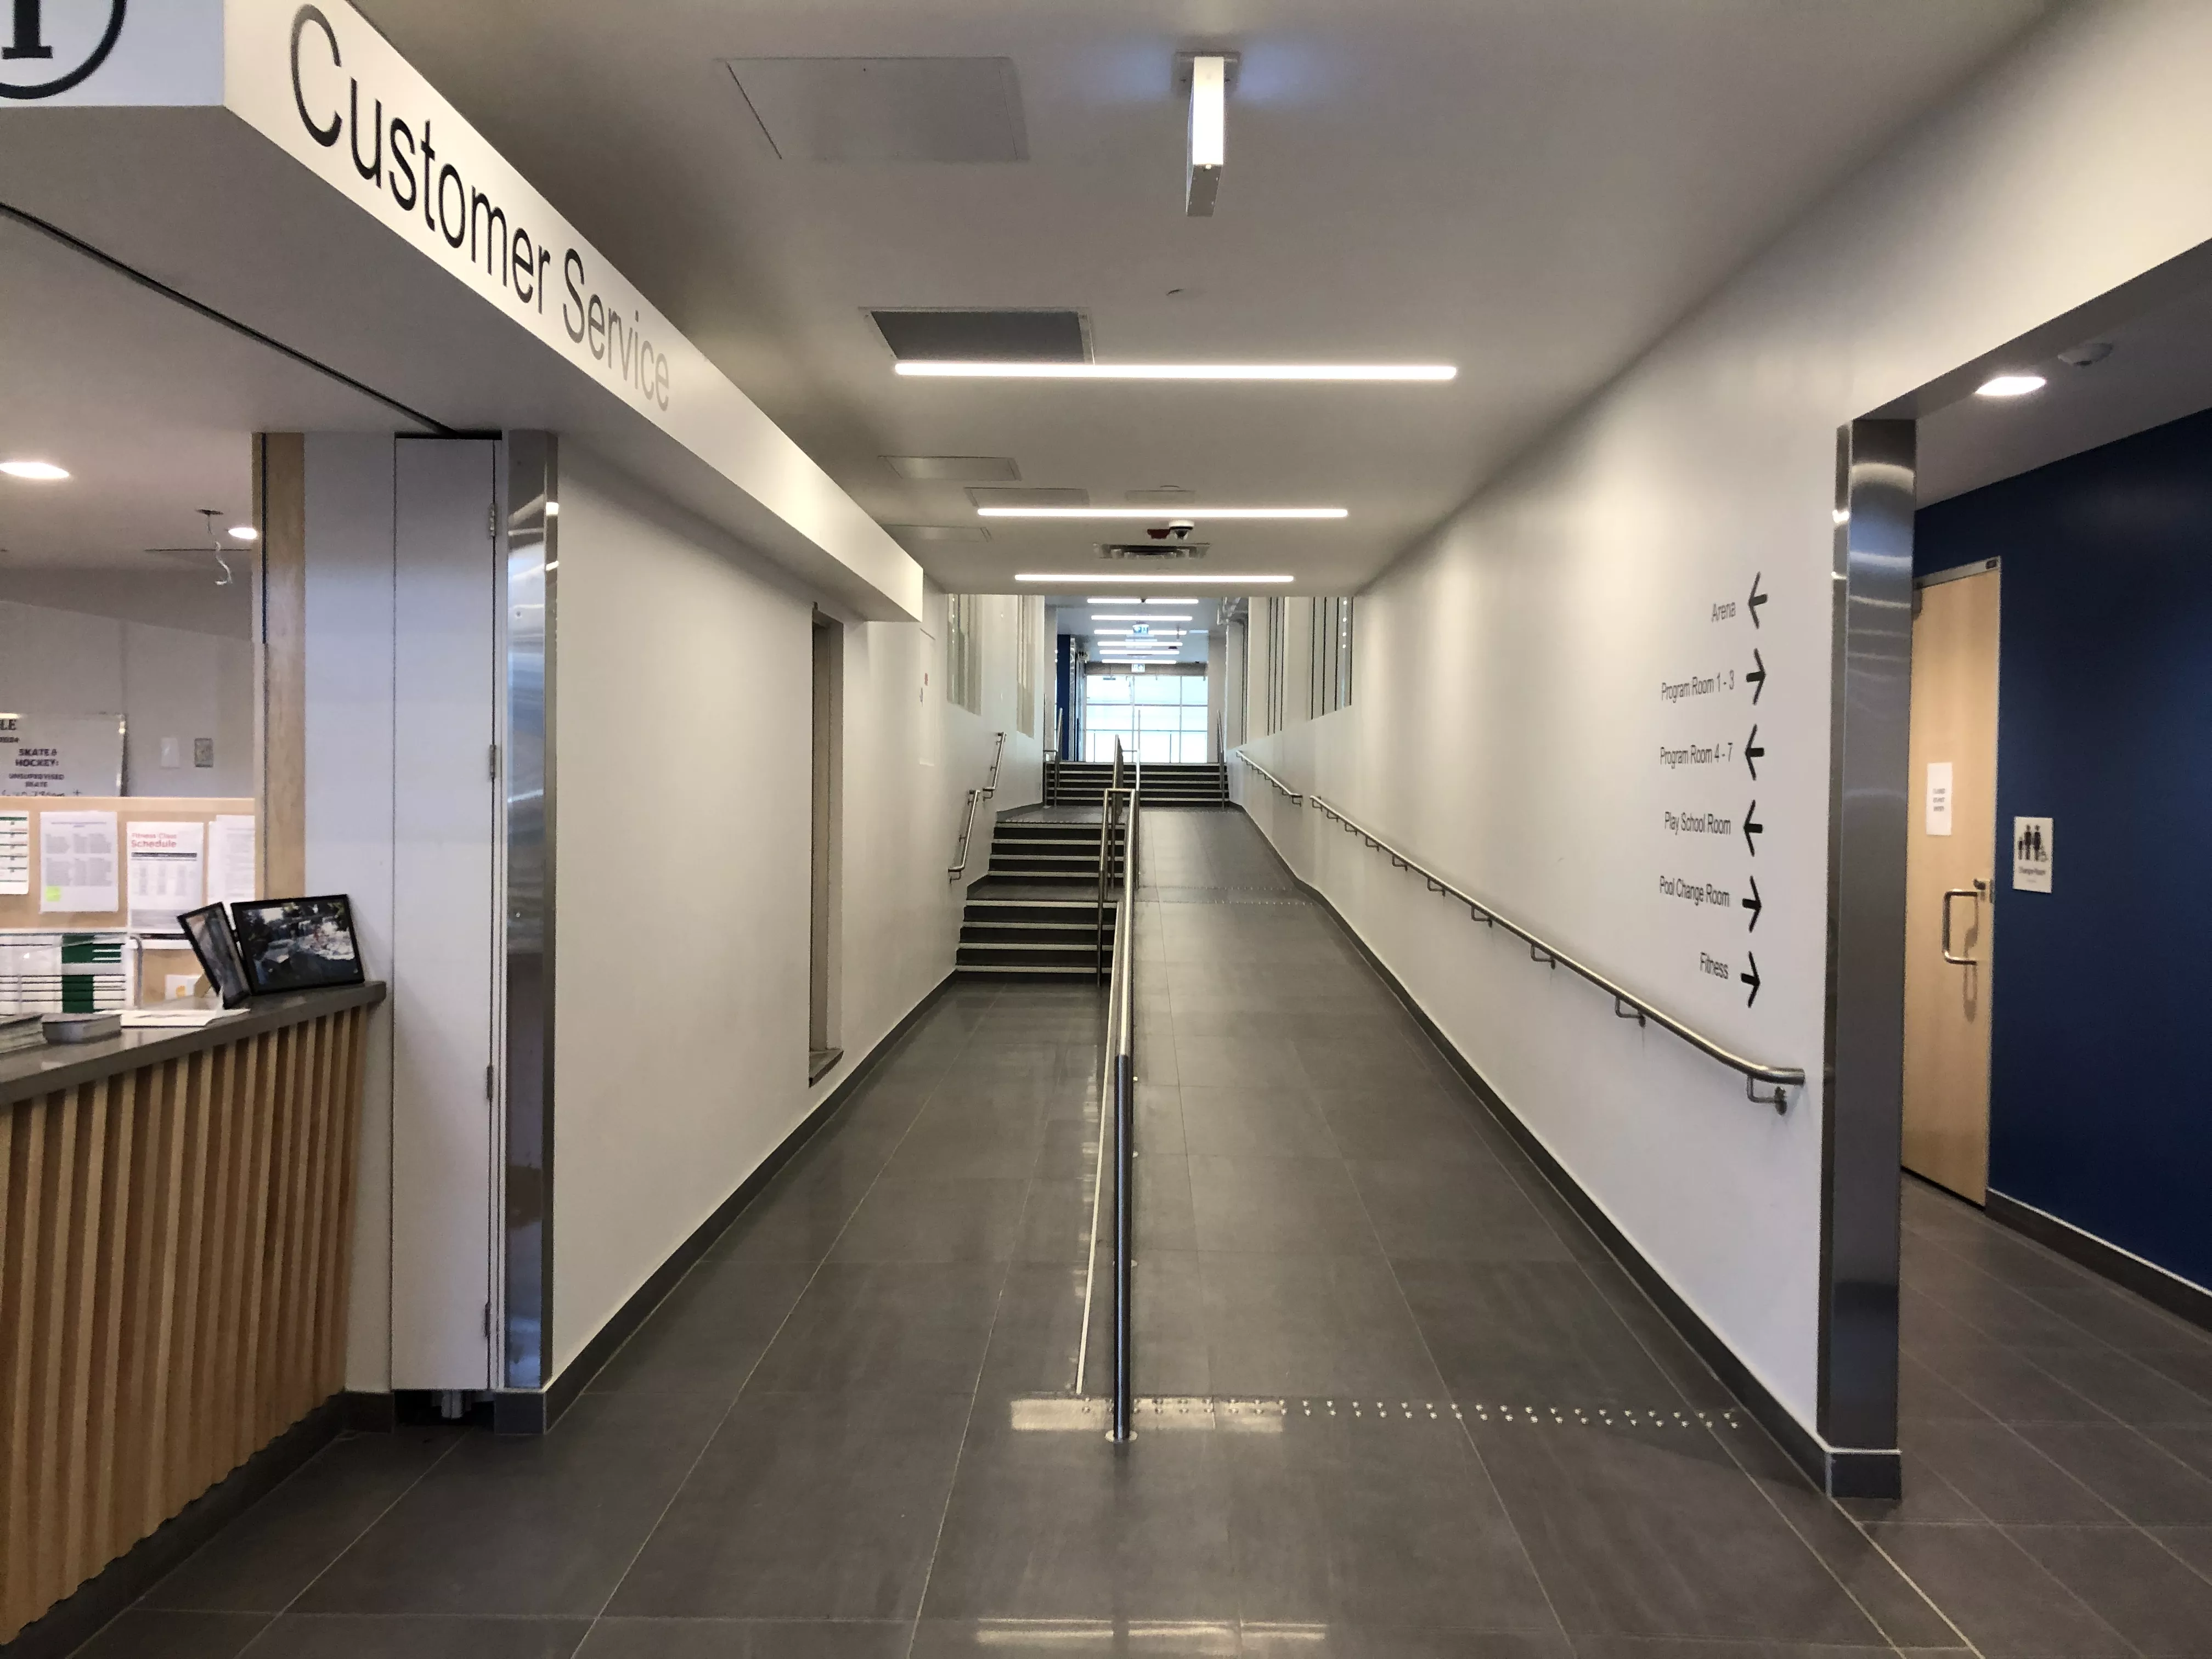 New main corridor